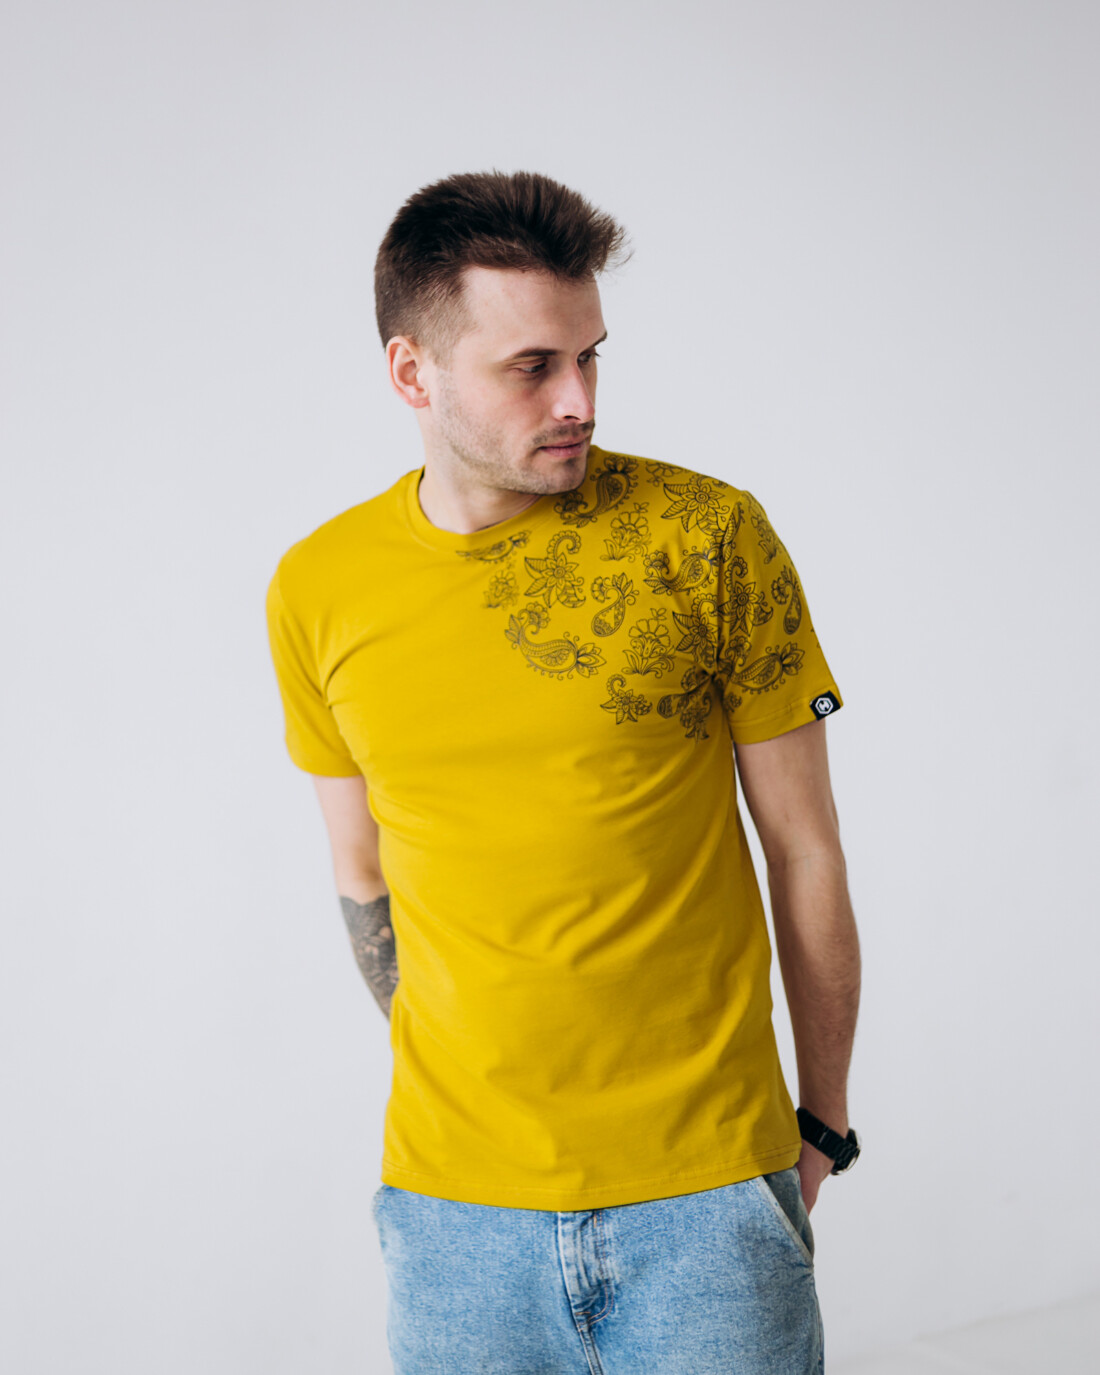 Мужская футболка с оригинальными узорами 40105